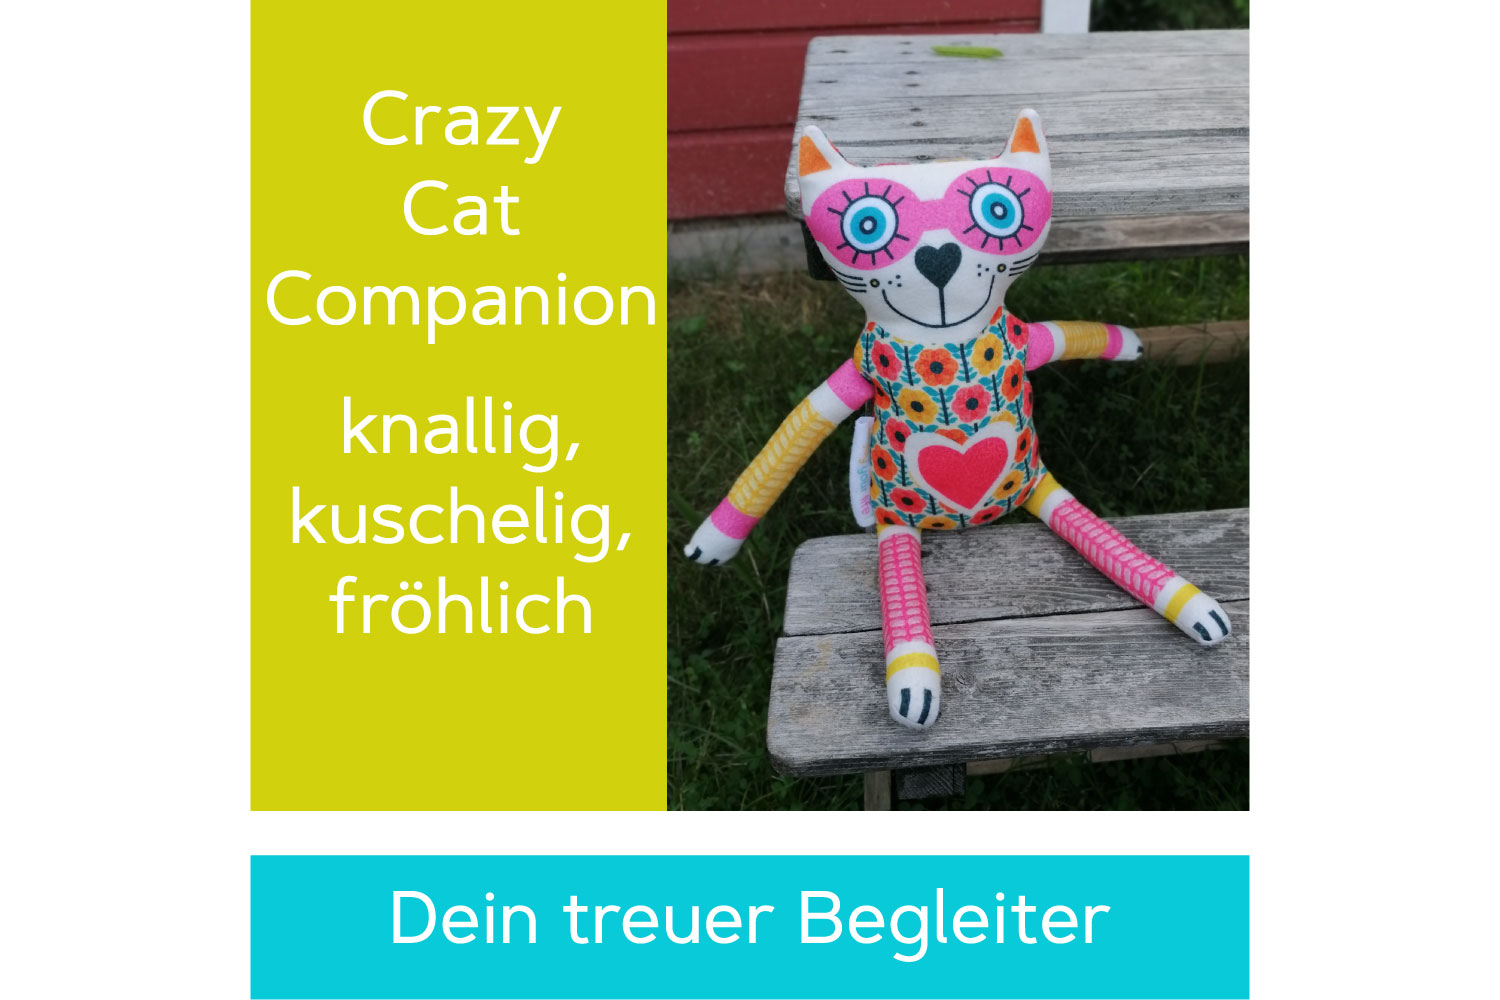 Crazy Cat Companion Das farbenfrohe fröhliche Kuscheltier